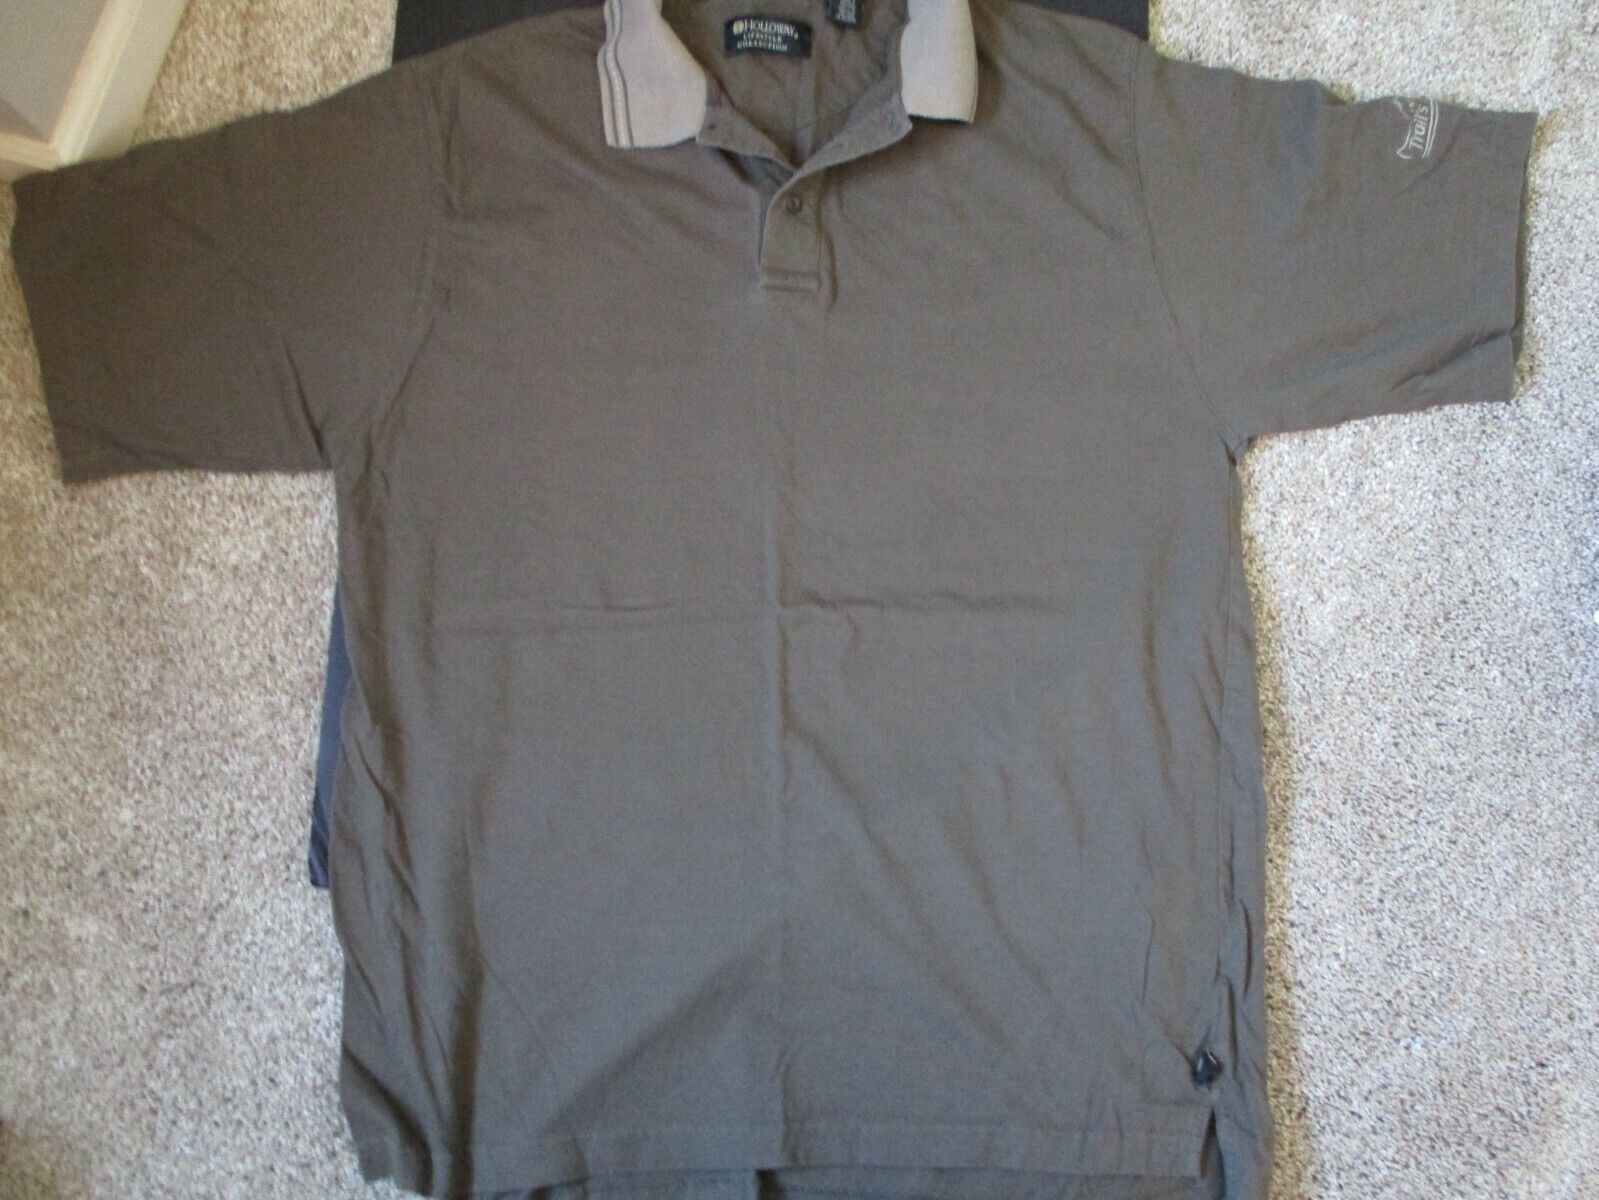 Trail\'s End BSA boy scout men\'s collar XL shirt